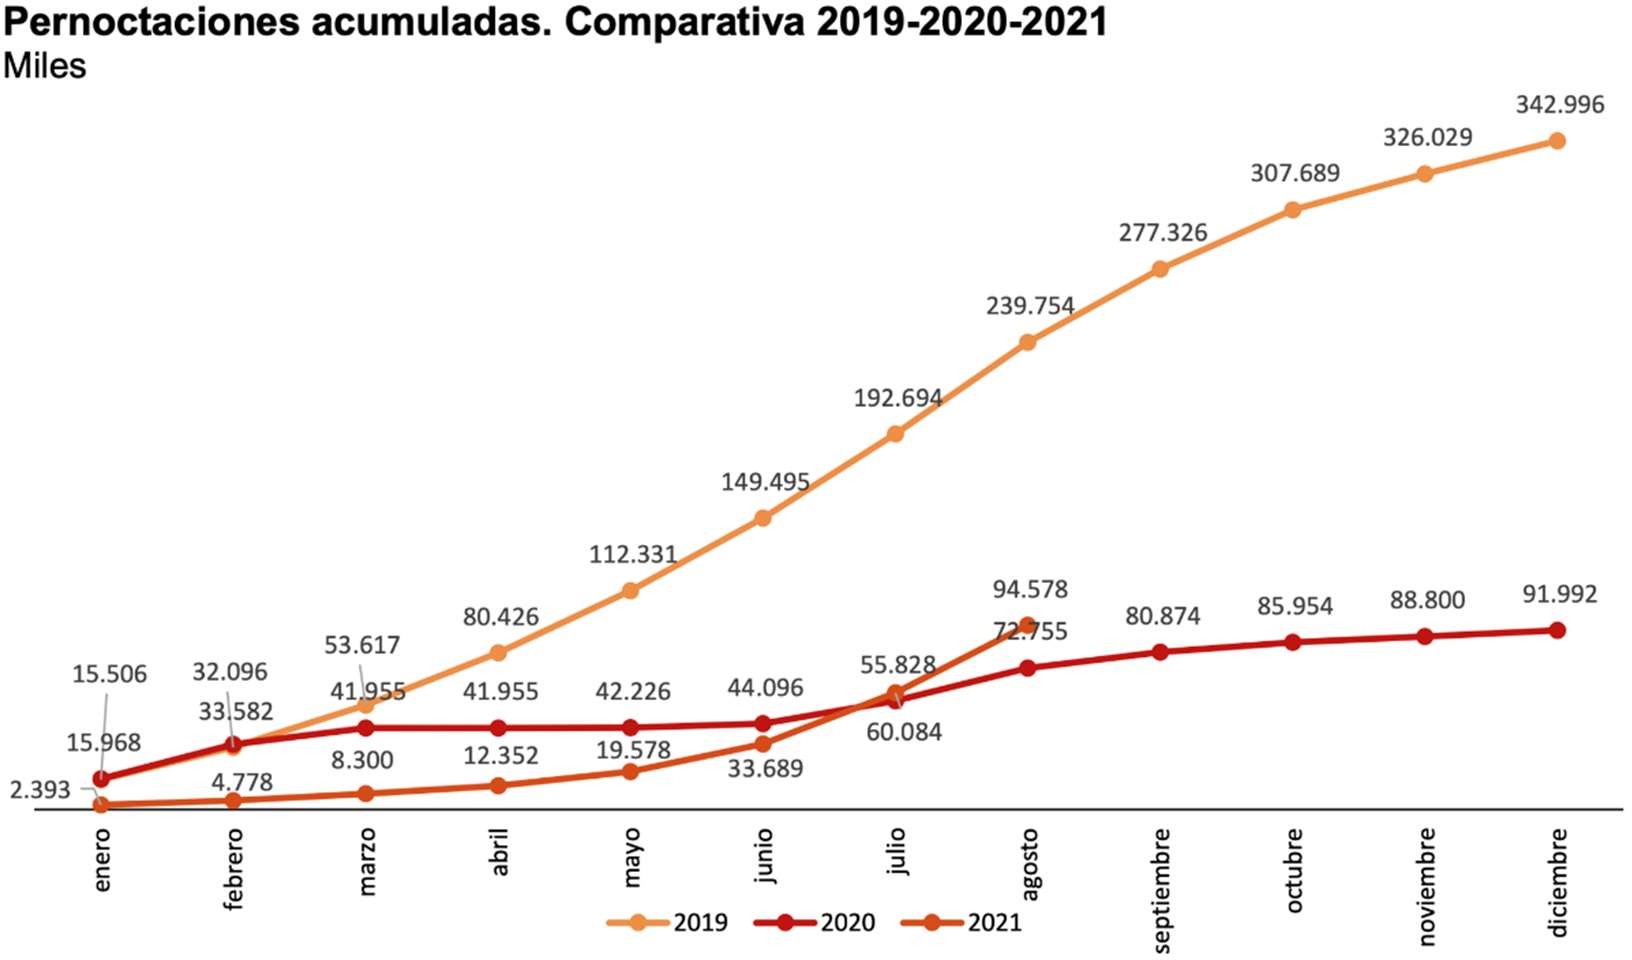 pernoctaciones acumuladas comparativa 2019-2020-2021